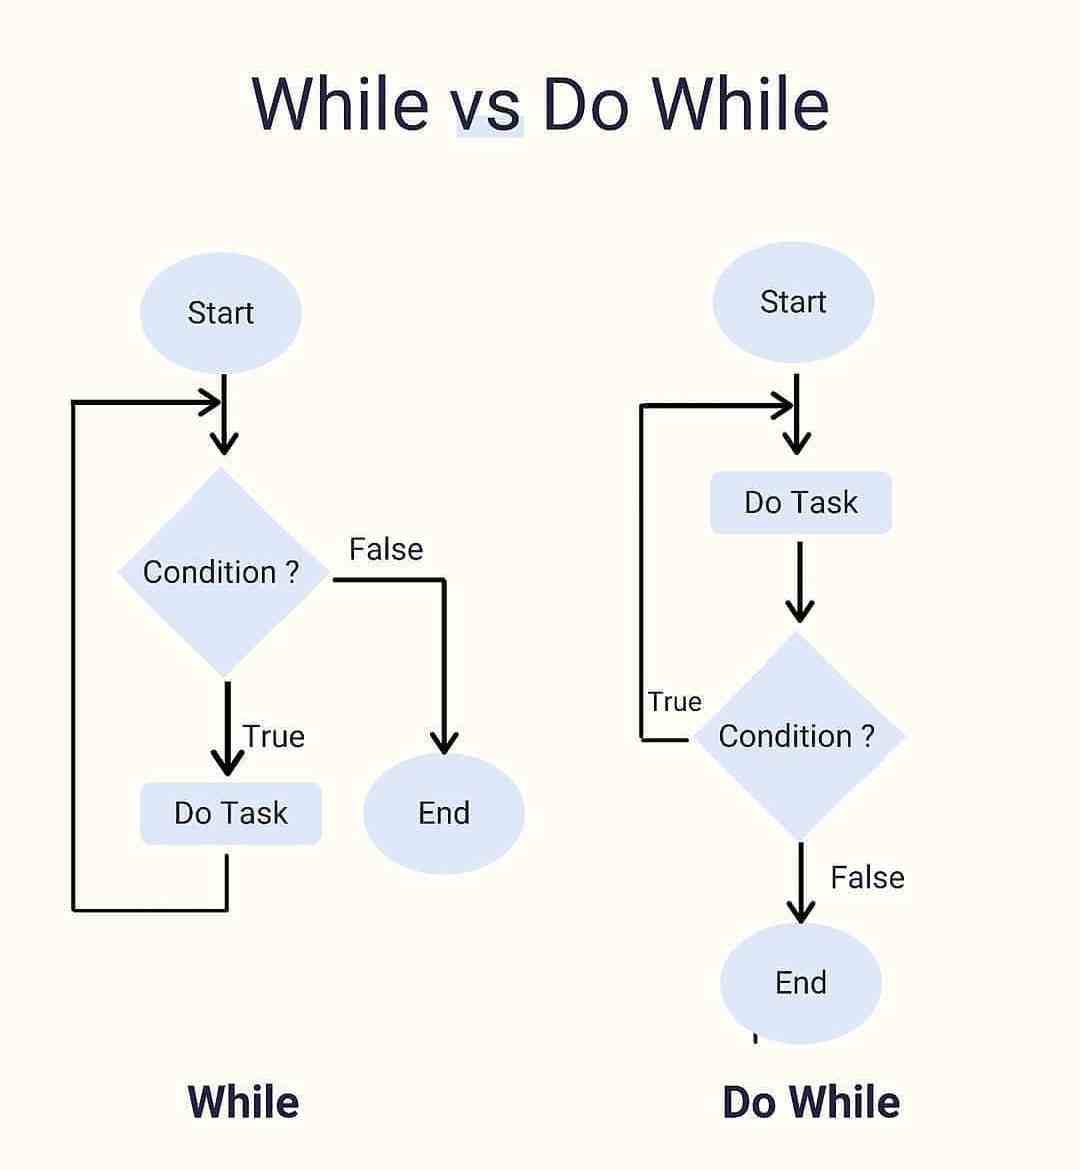 While vs Do While